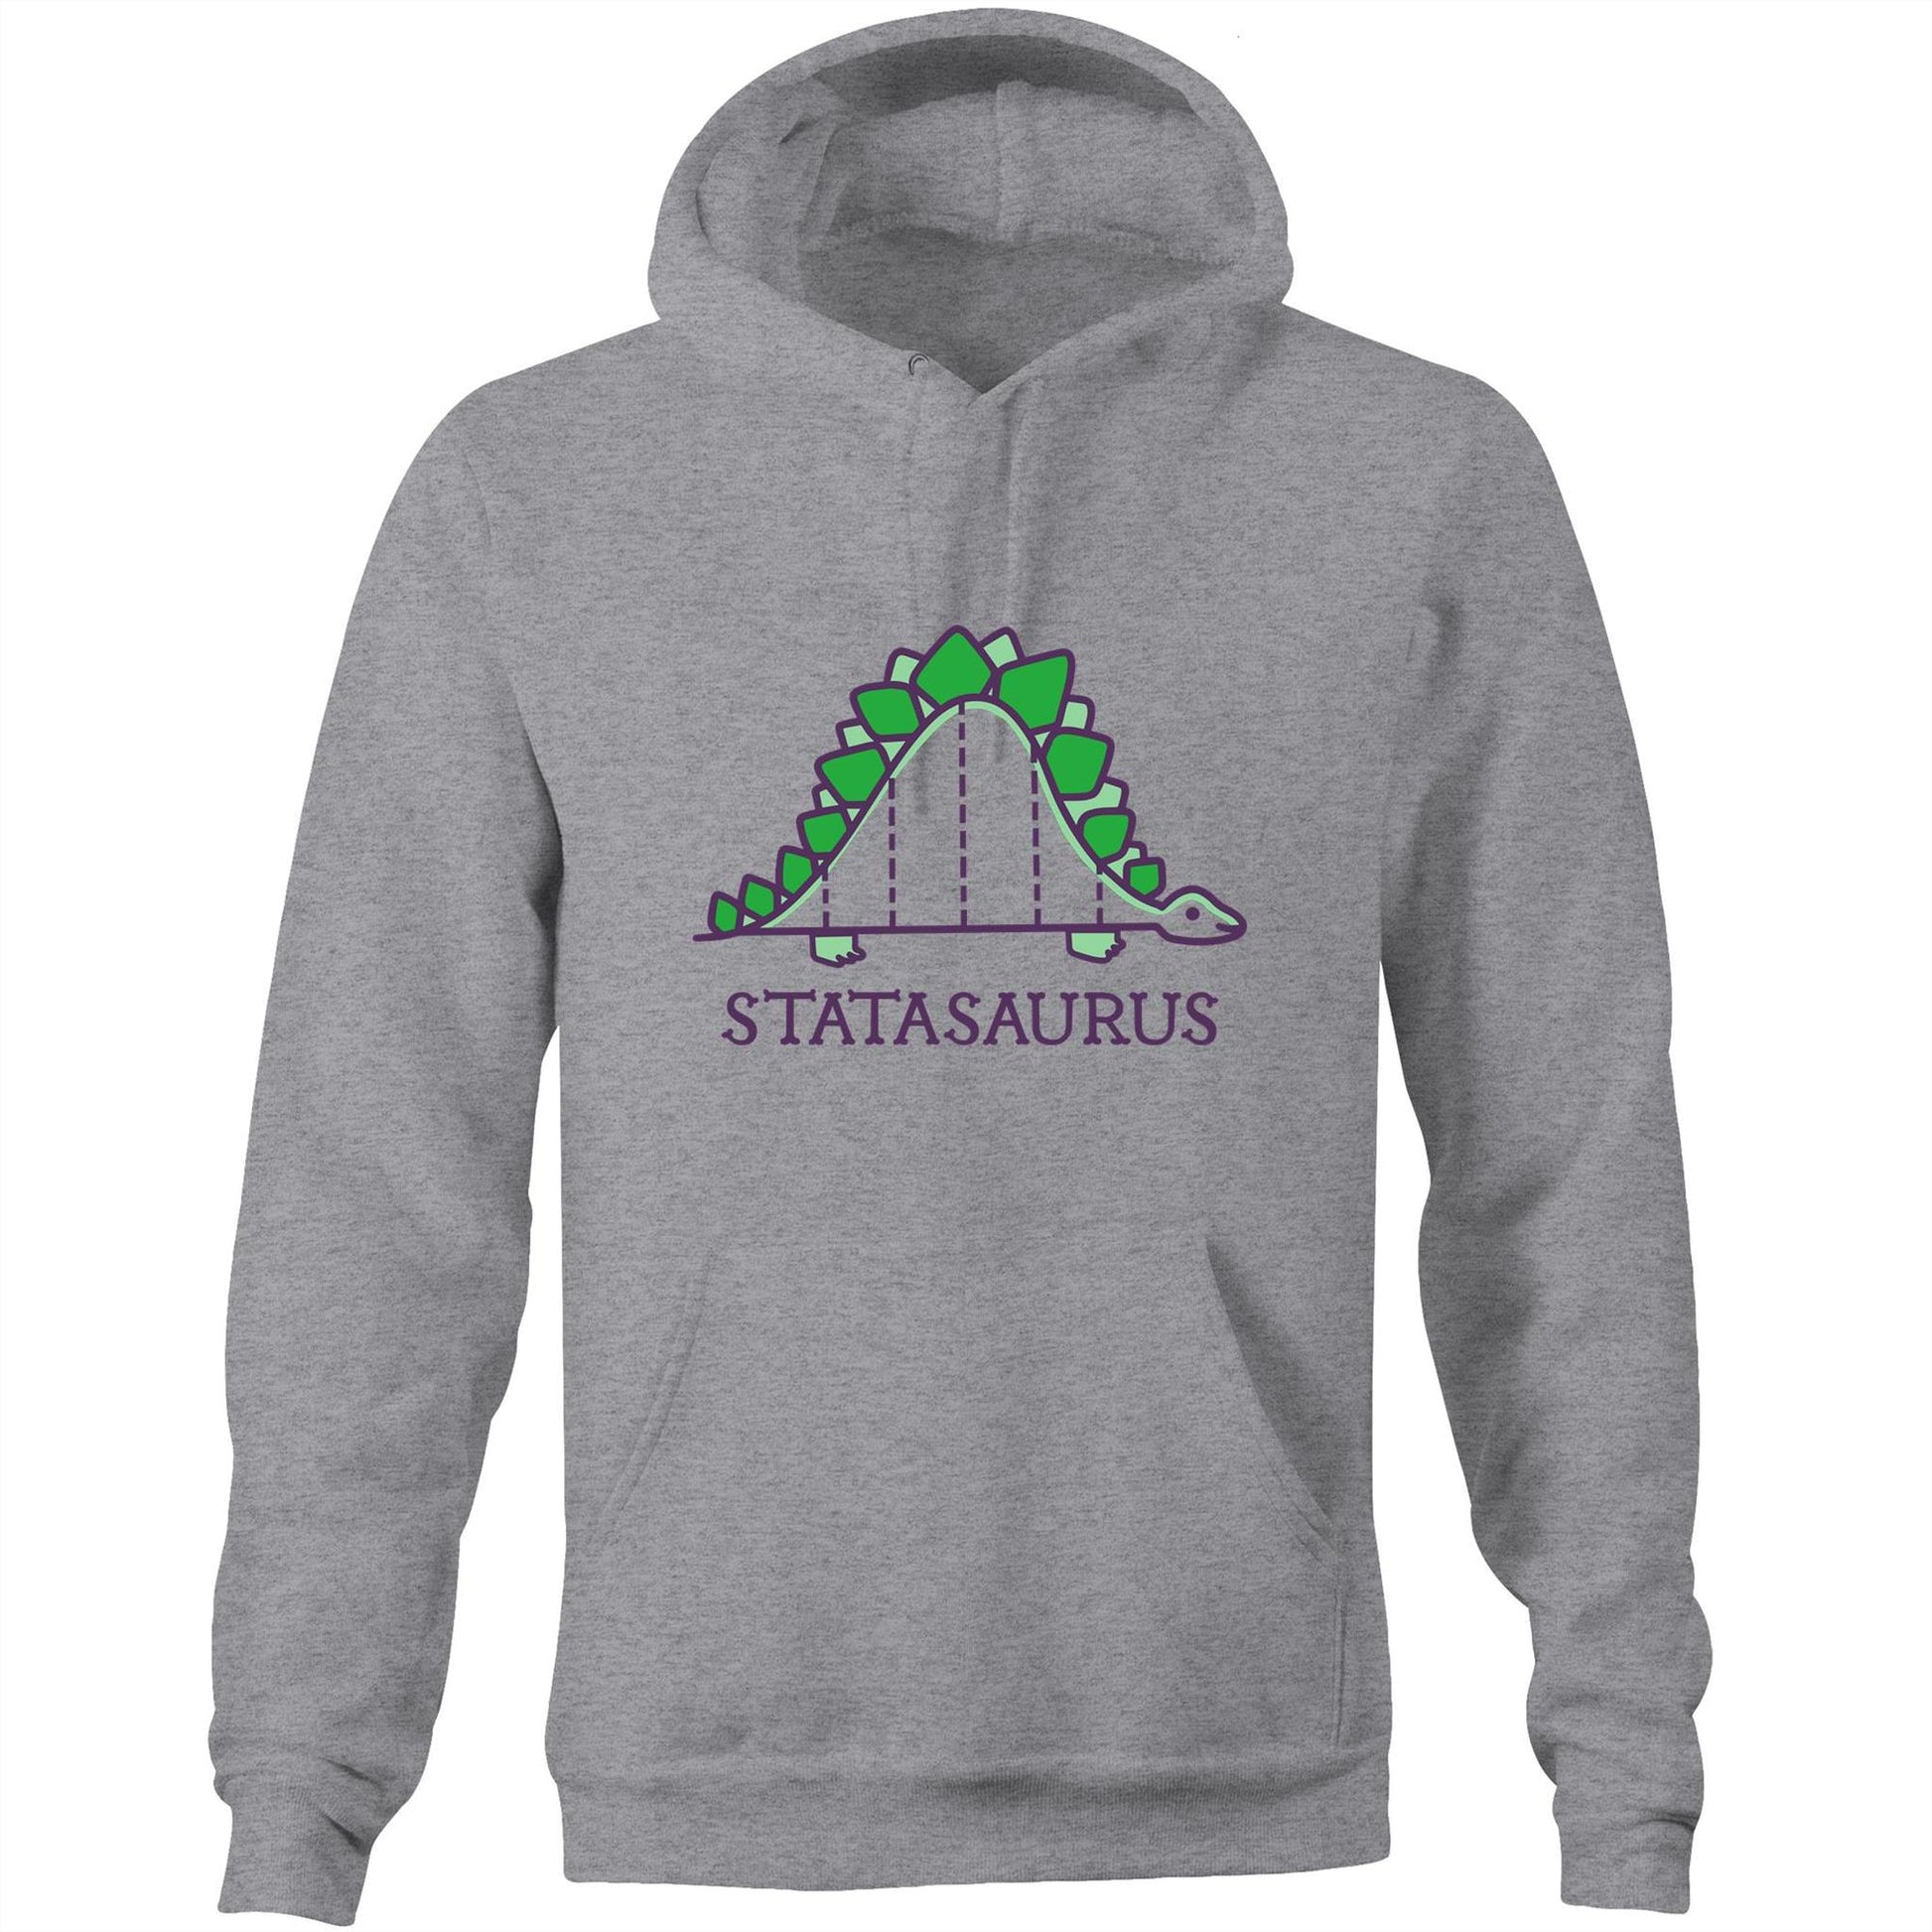 Statasaurus - Pocket Hoodie Sweatshirt Grey Marle Hoodie animal Maths Science